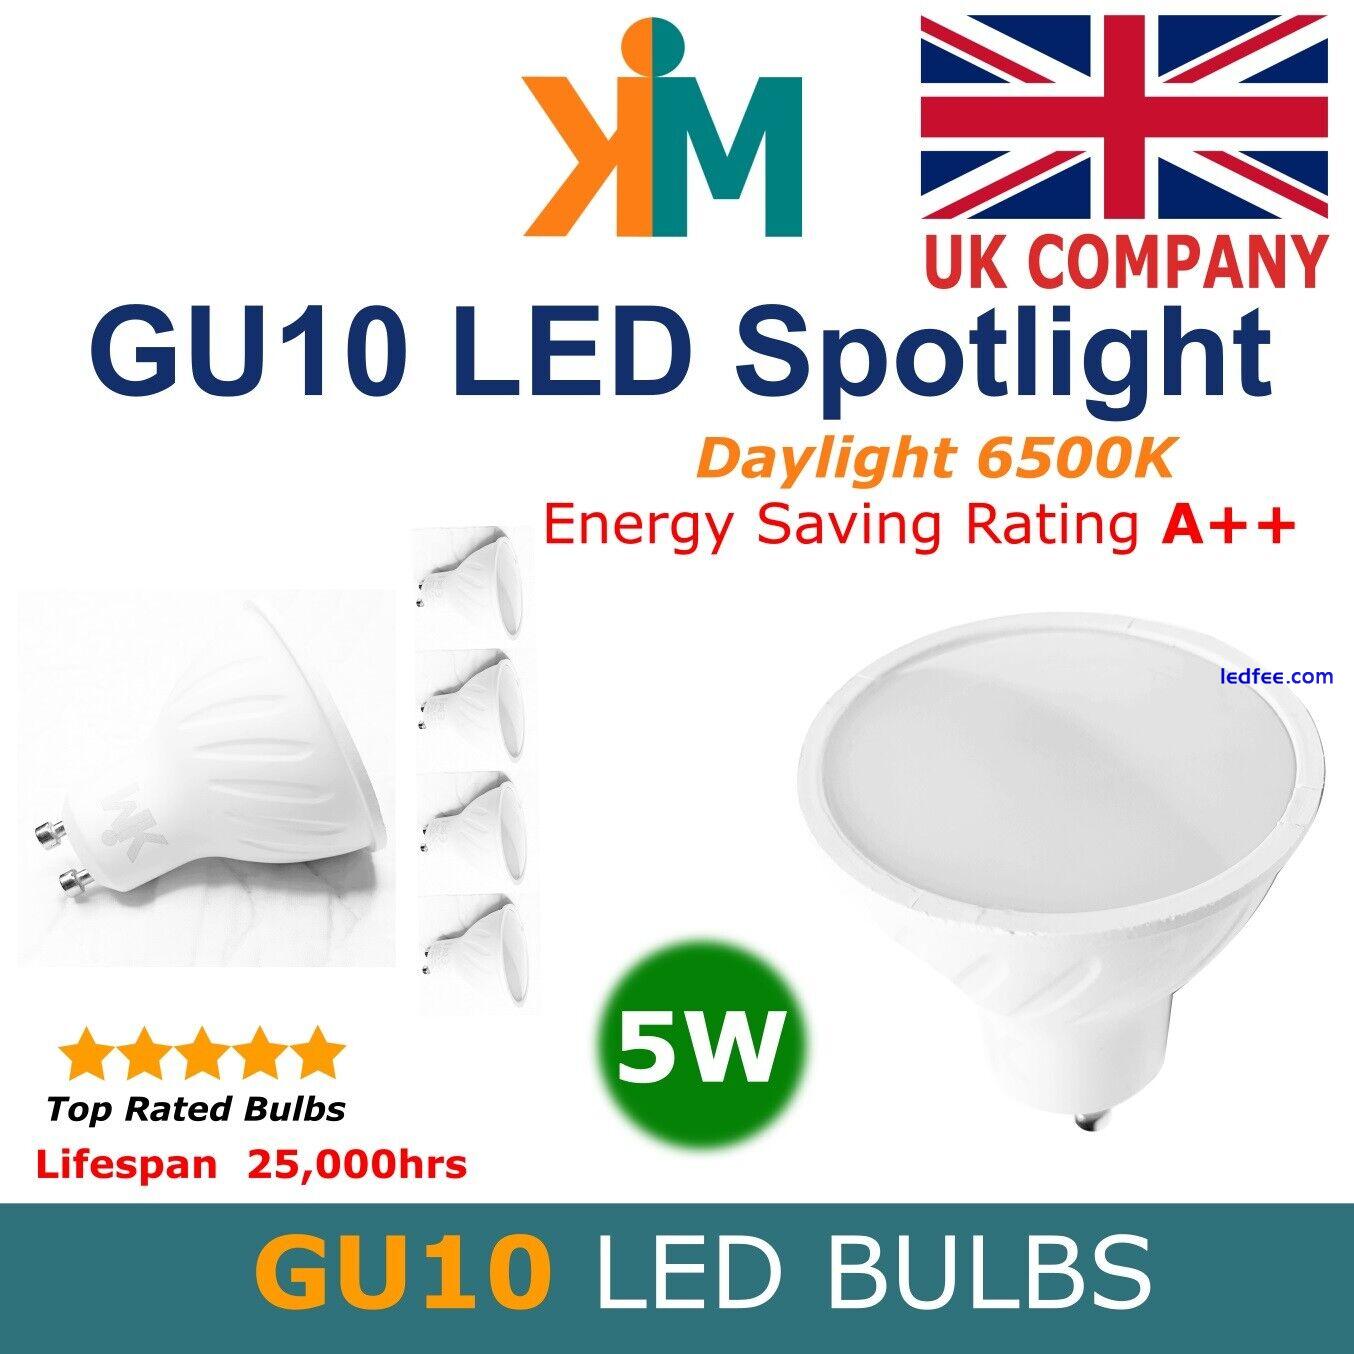 GU10 LED Bulbs  Spotlights LED Lights Energy A++ Rating Daylight Colour 6500K 5W 4 